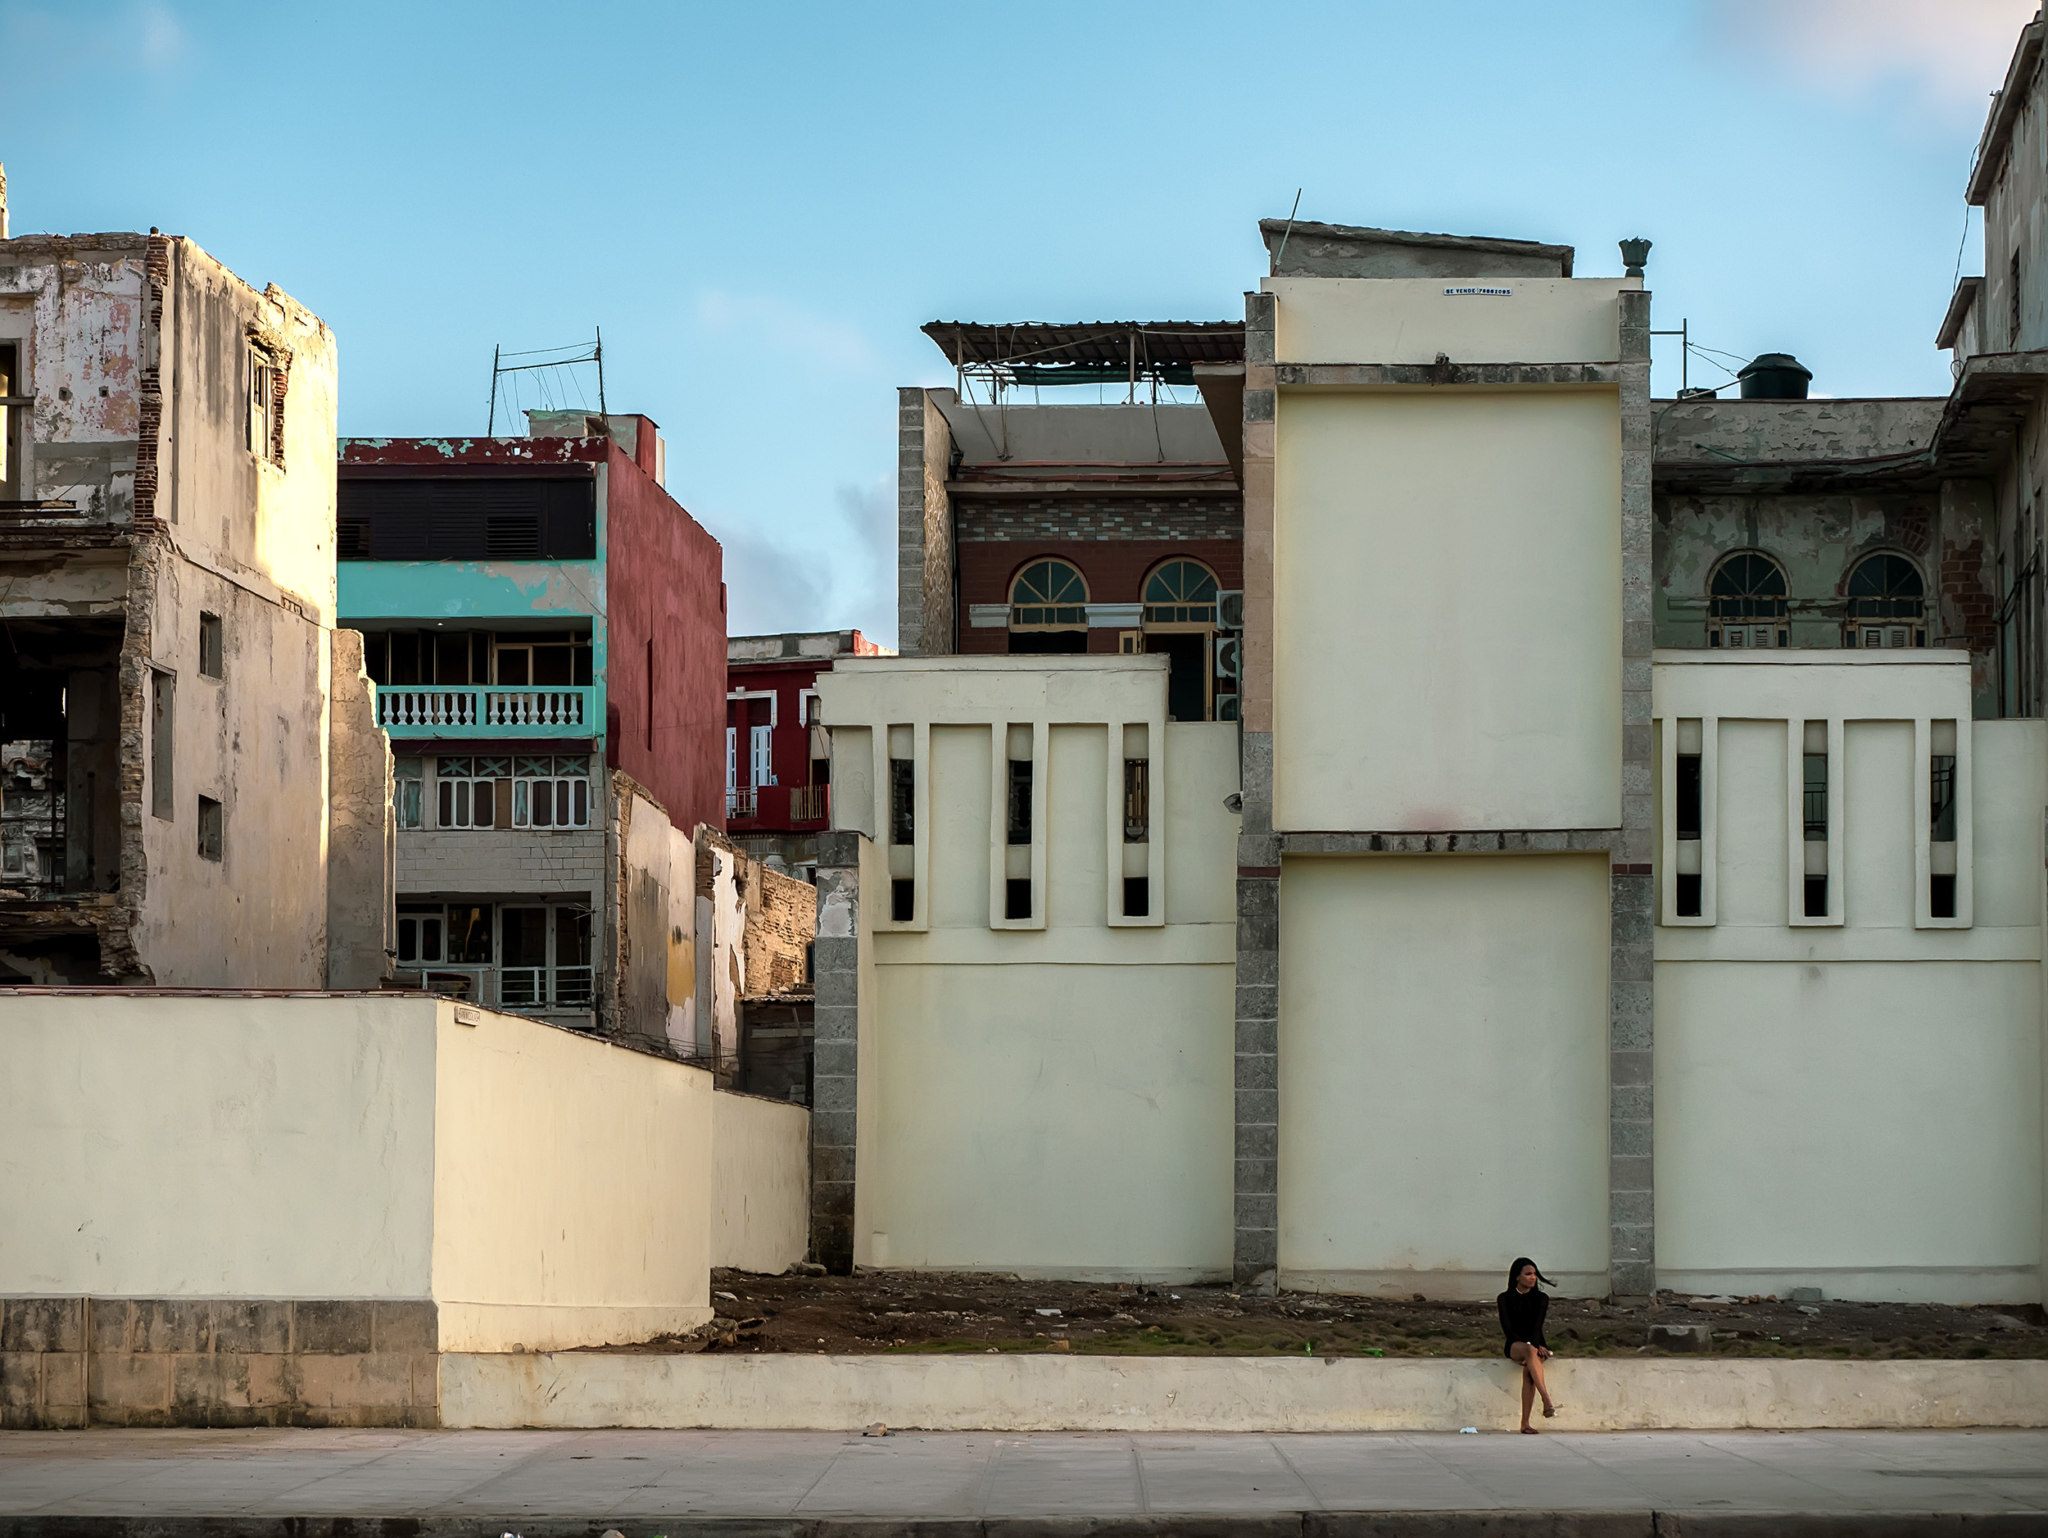 Il Malecon all'Havana, fotografia di architettura nel mondo